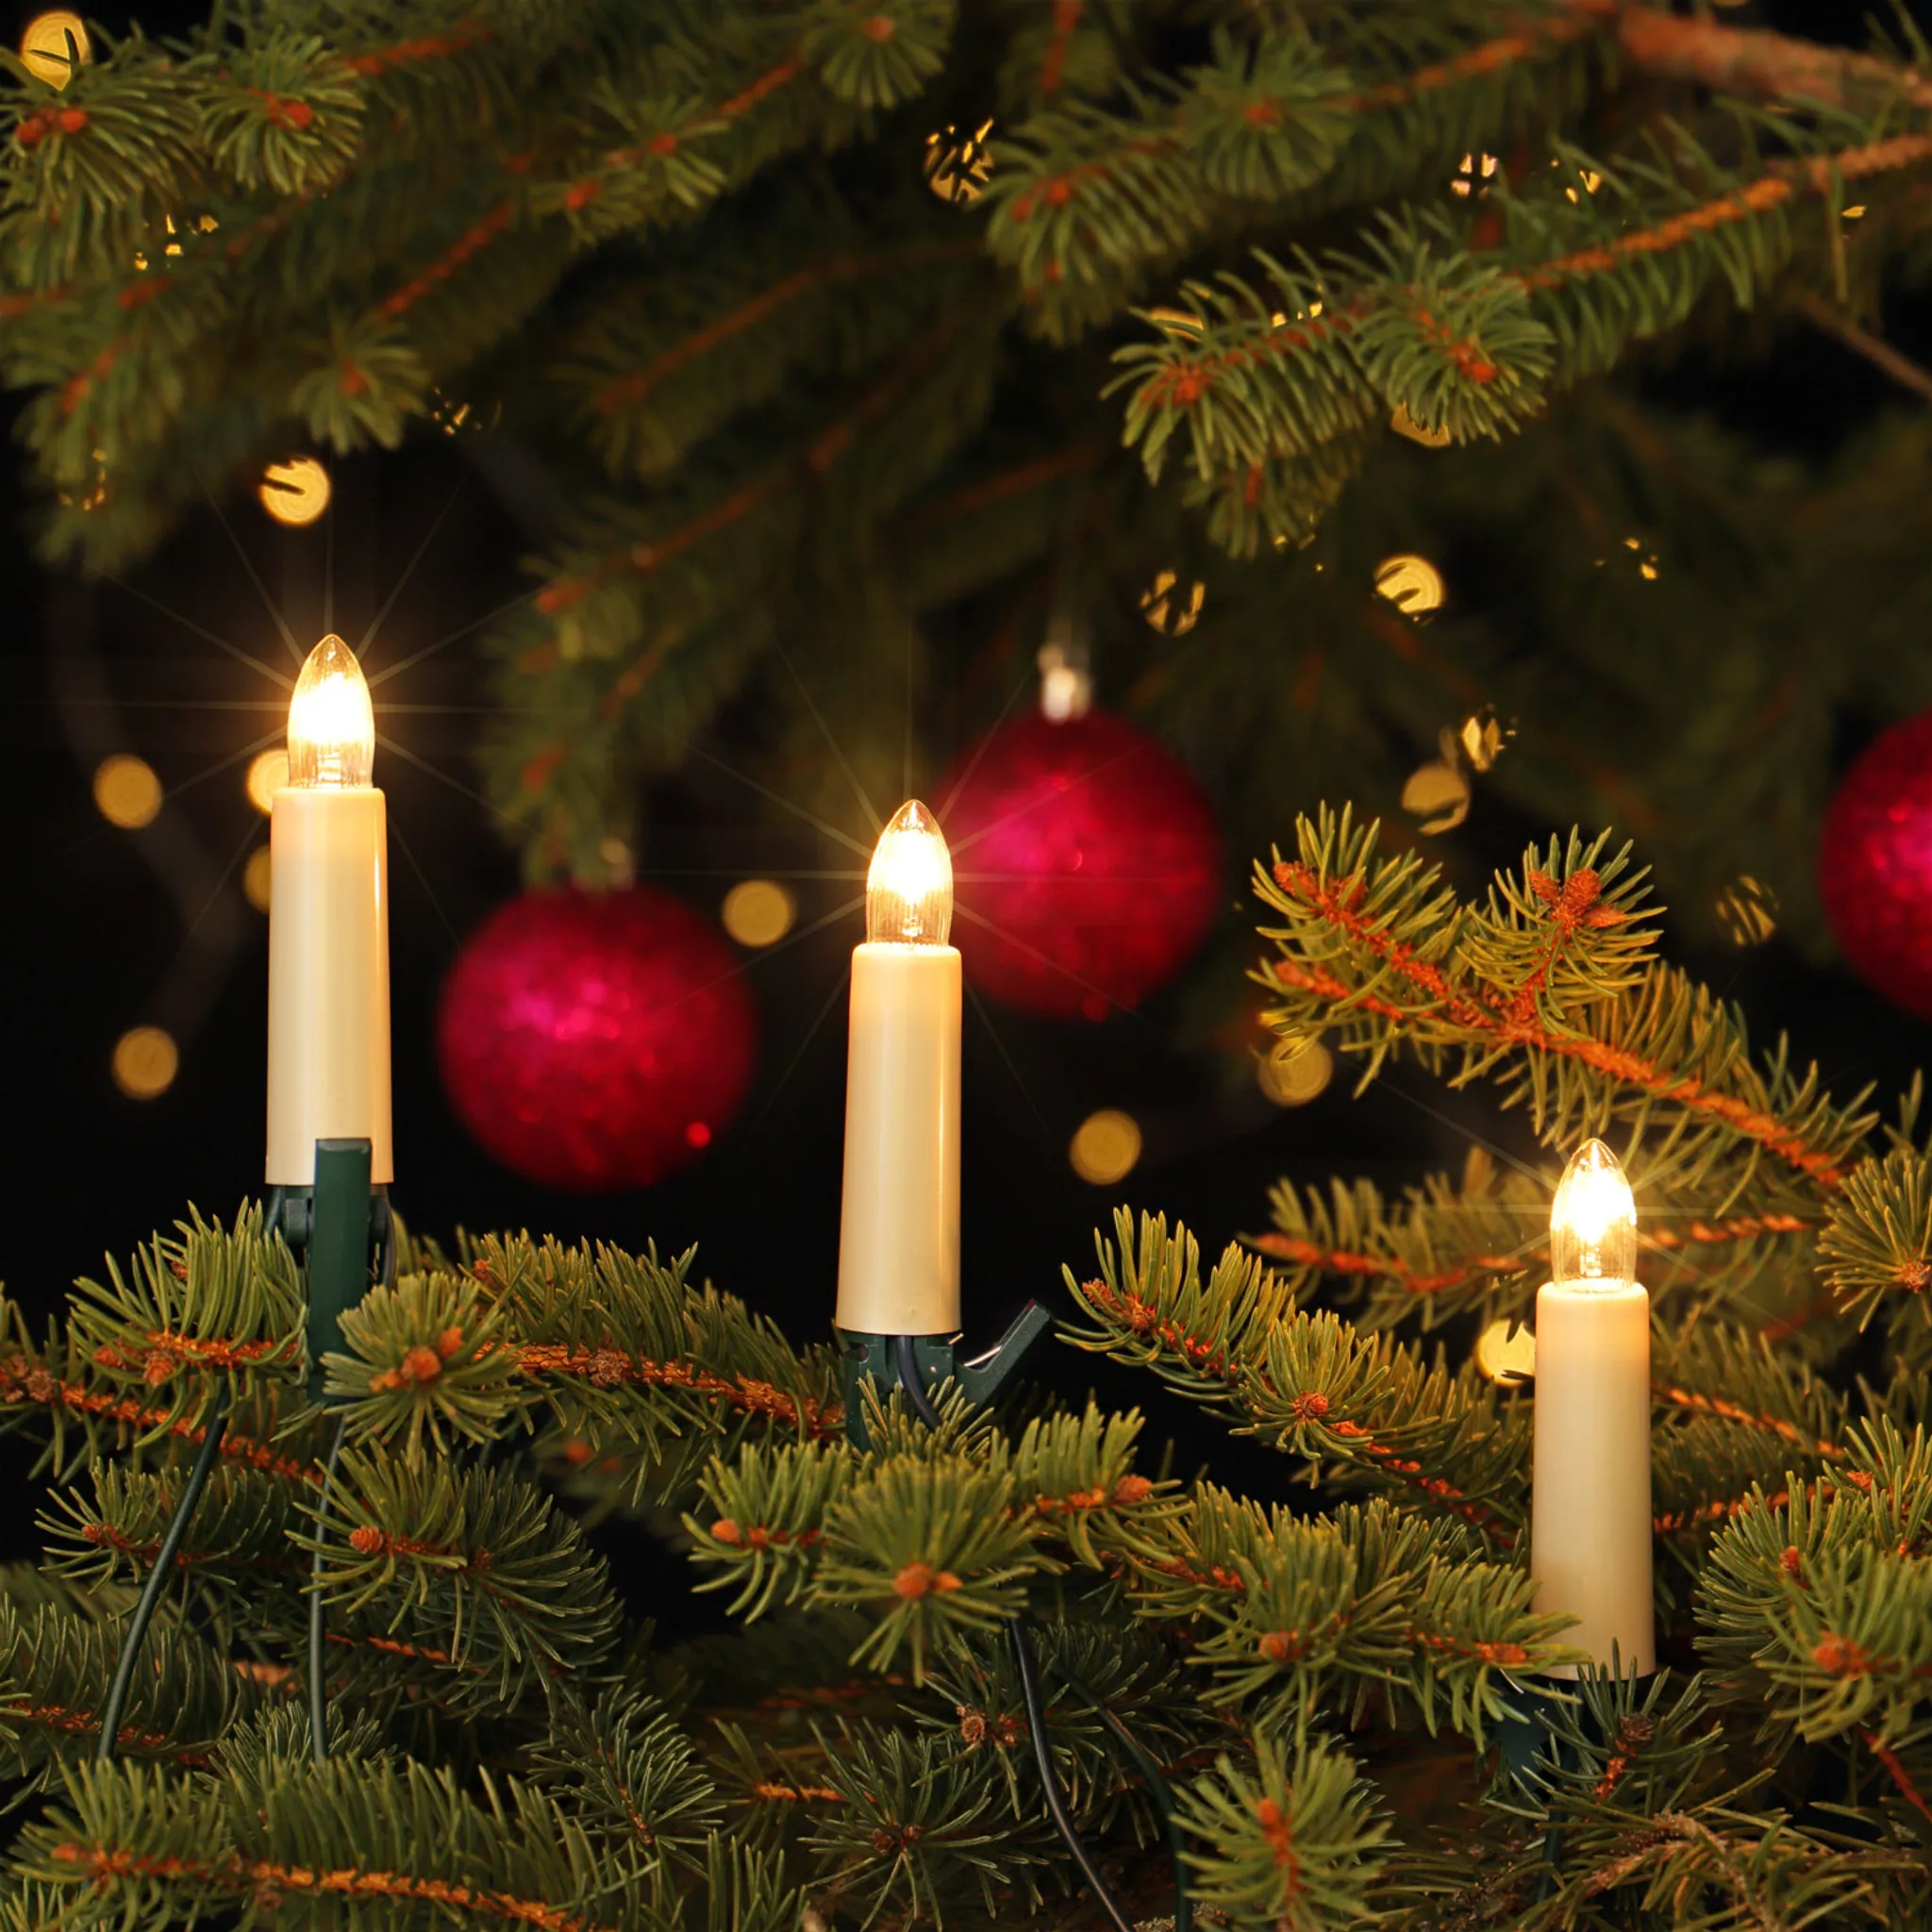 30 Weihnachtsbaum NARVA Kerzenlichterkette Schaftkerzen Beleuchtung 17,4m innen warm Tannenbaum